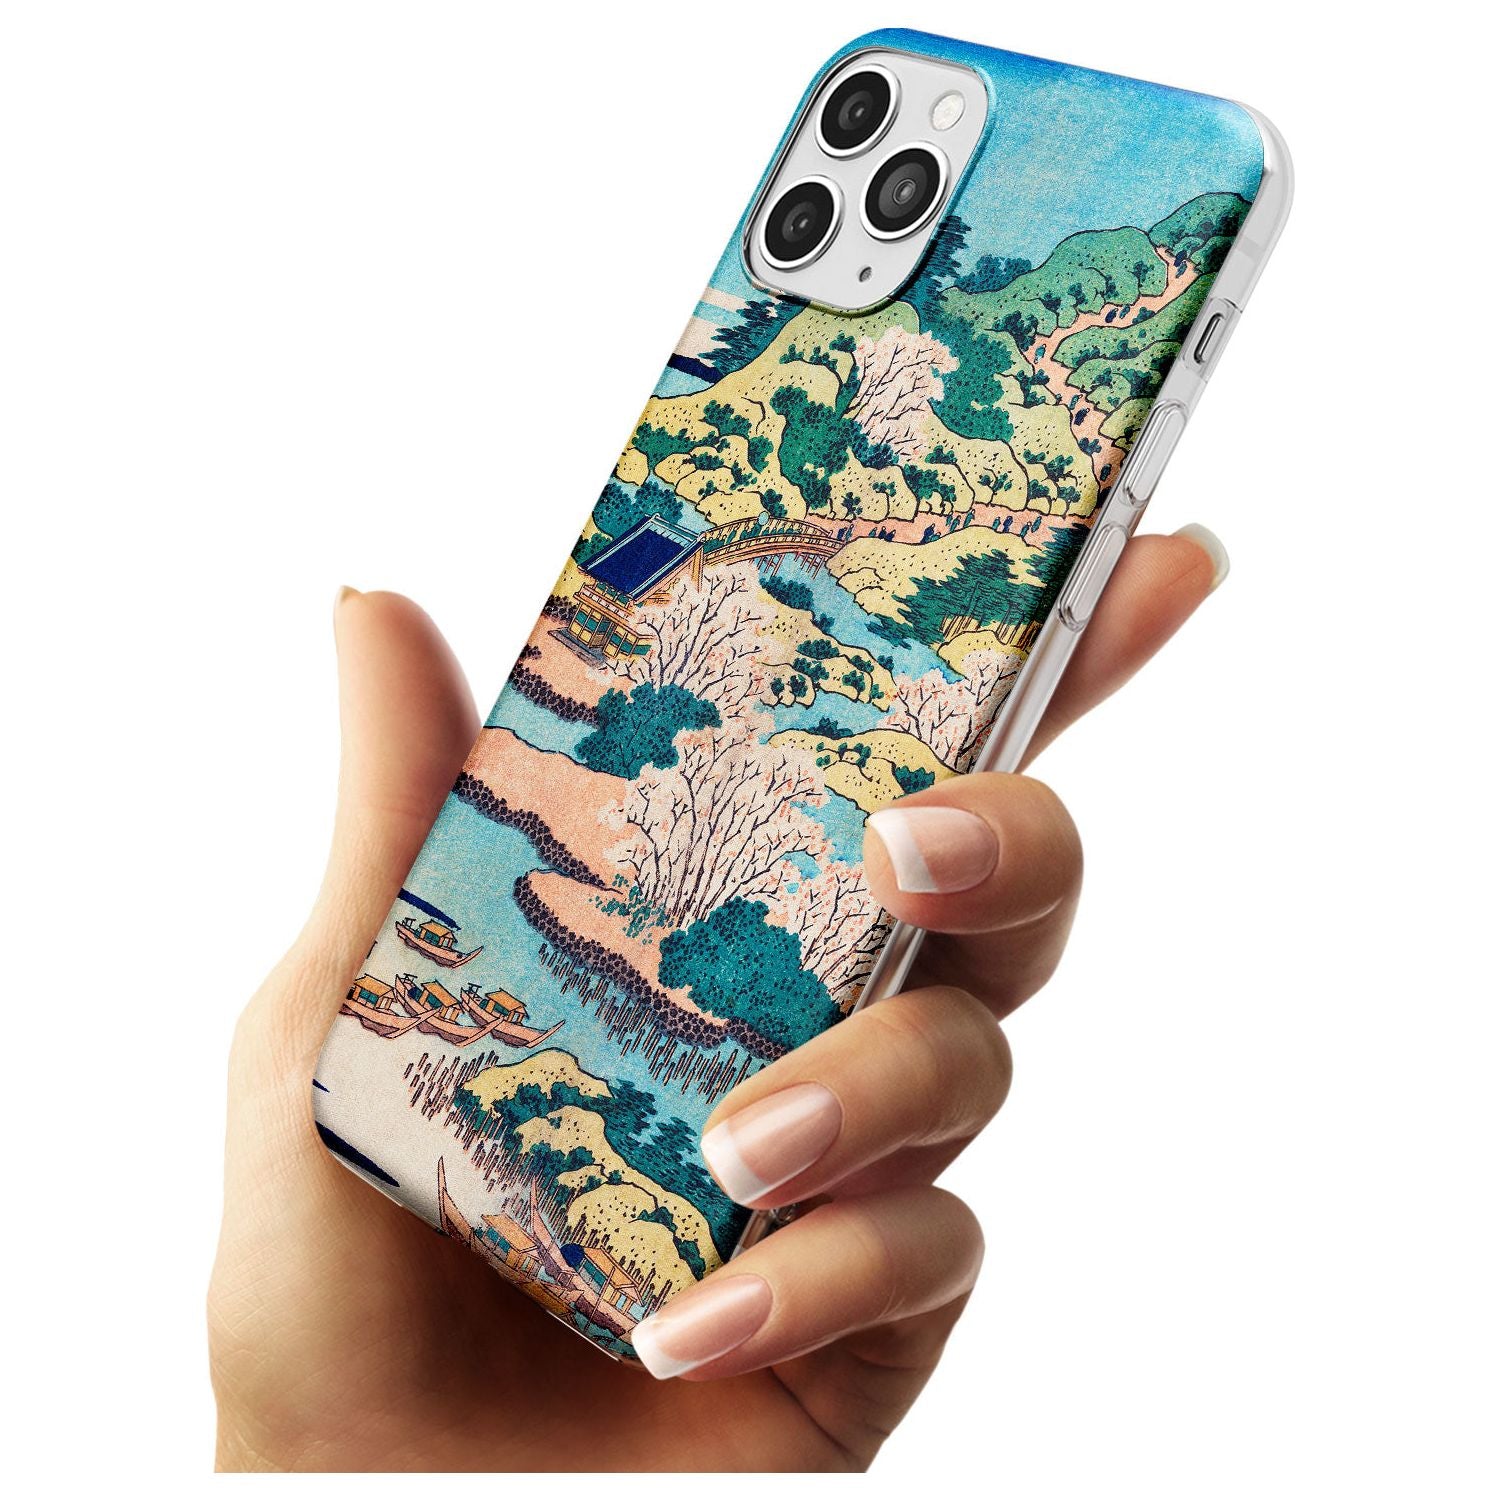 Coastal Community by Katsushika Hokusai  Black Impact Phone Case for iPhone 11 Pro Max